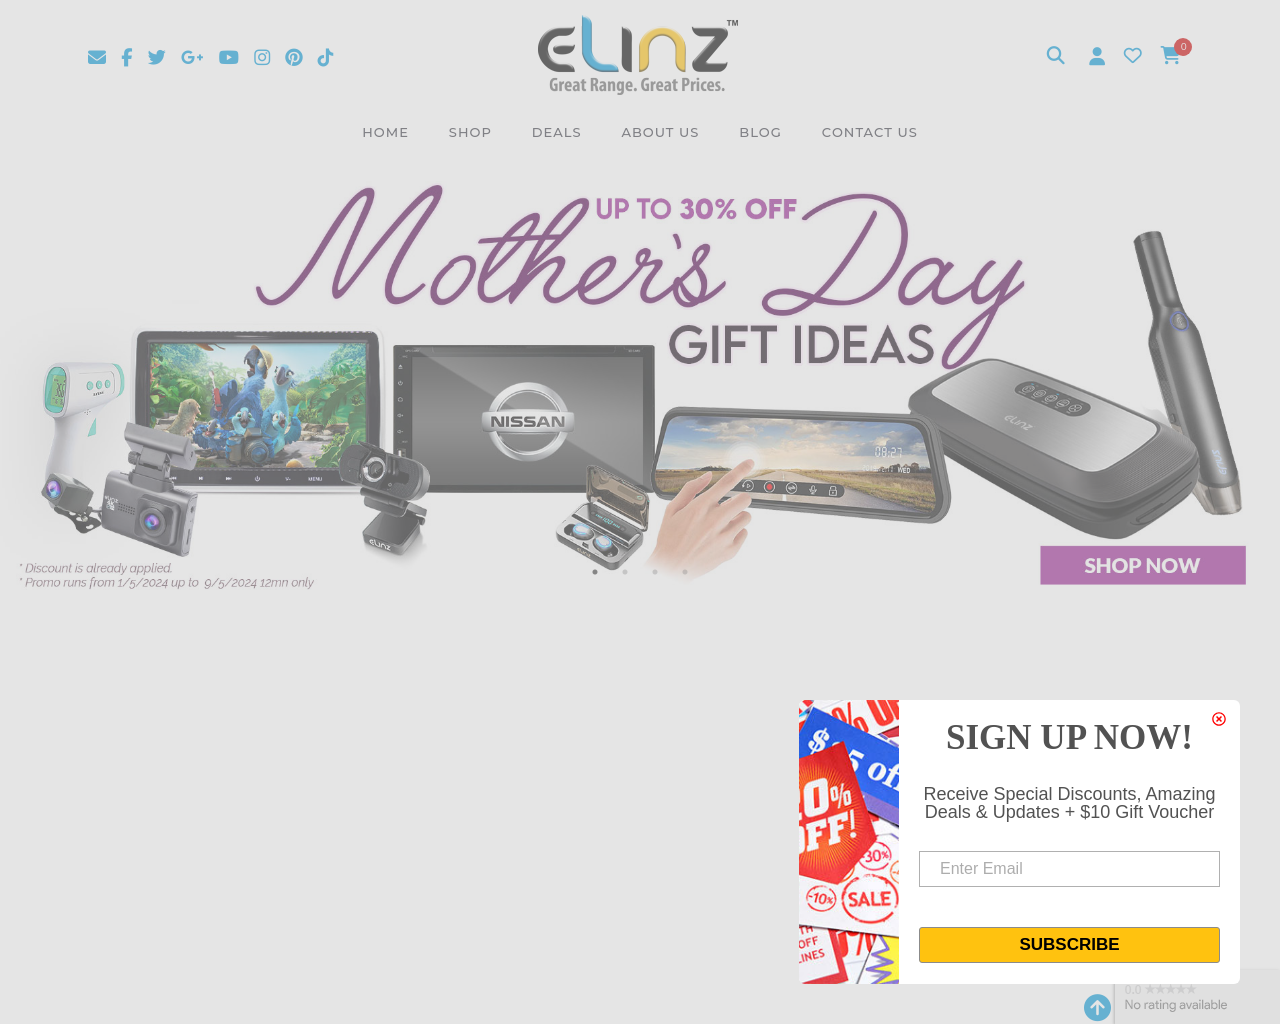 elinz.com.au